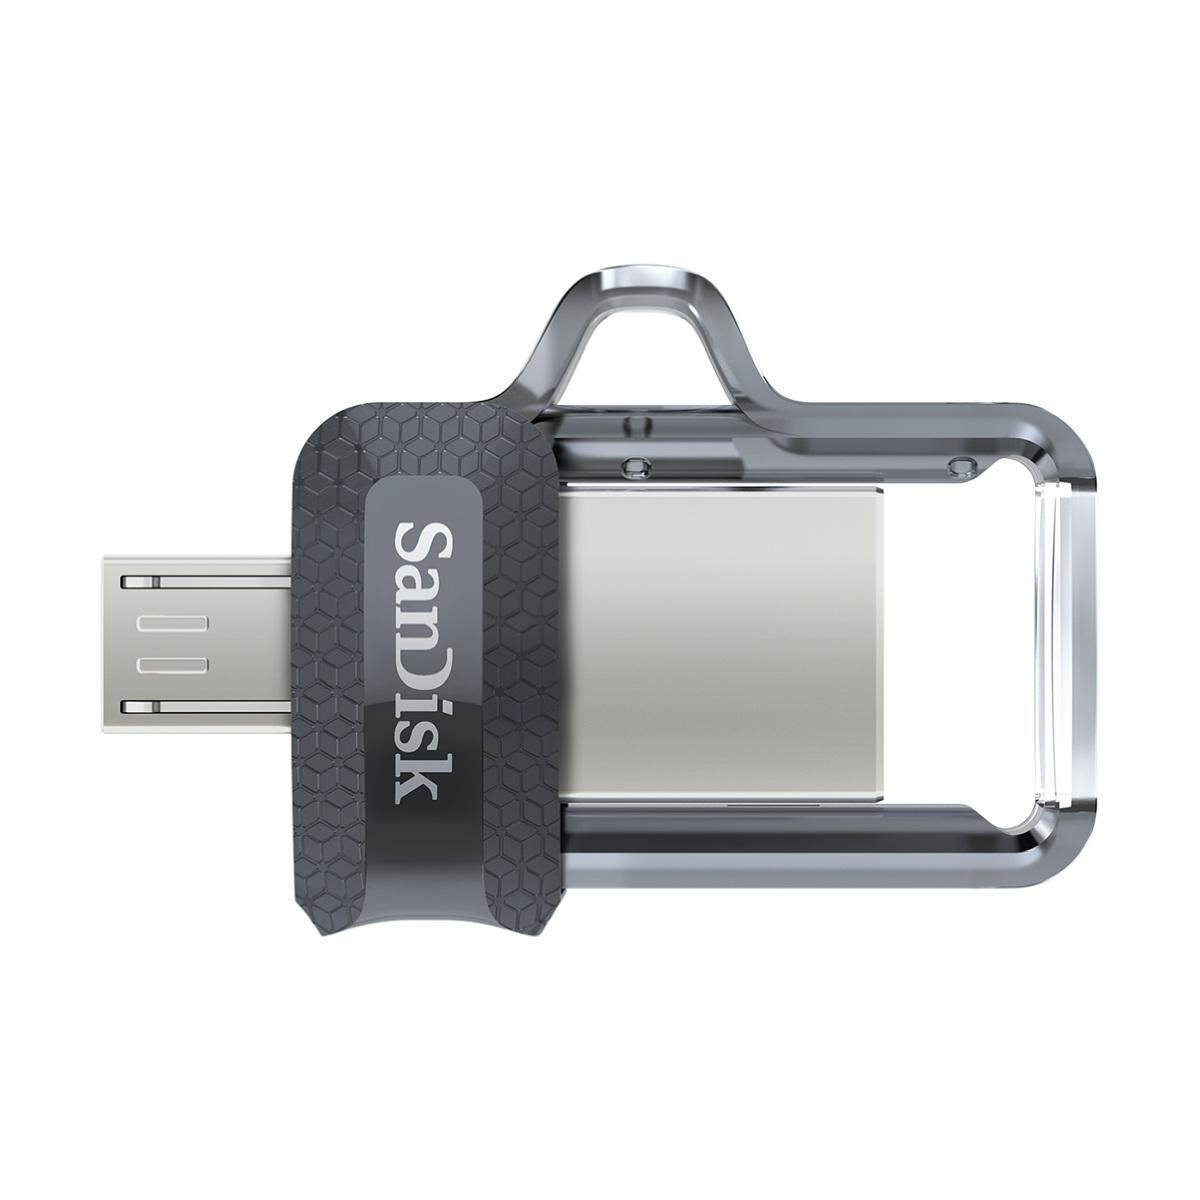 SanDisk Ultra Dual Drive M3.0 OTG USB 3.0 and Micro-USB Flash Drive (up to 150 MB/s) - 256GB / 128GB / 64GB / 32GB / 16GB